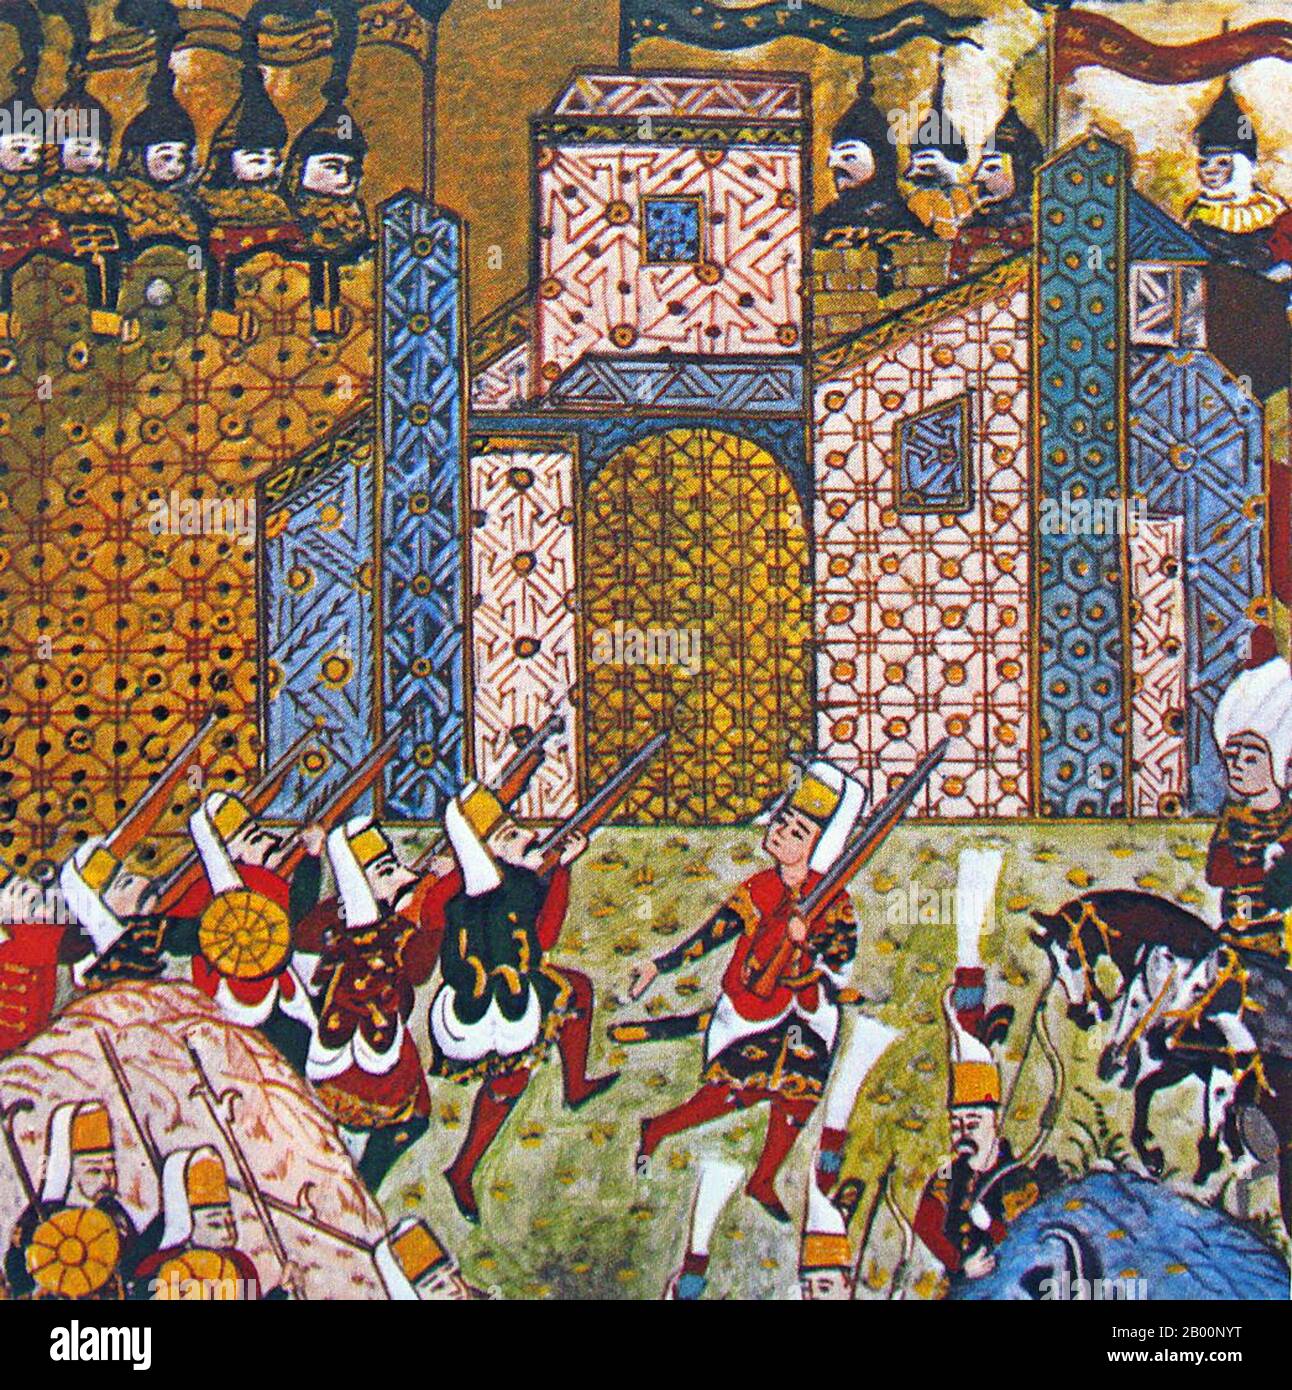 Türkei: Osmanische Miniatur von Janissaries, die gegen die Ritter von St. John in der Belagerung von Rhodos von 1522 kämpfen. Gemälde von Matrakci Nasuh (1480-1564), 1558. Die Belagerung von Rhodos von 1522 war der zweite und letztlich erfolgreiche Versuch des Osmanischen Reiches, die Ritter von Rhodos aus ihrer griechischen Inselhochburg zu vertreiben und damit die osmanische Kontrolle über das östliche Mittelmeer zu sichern. Die erste Belagerung im Jahr 1480 war erfolglos. Die Ritter von St. John hatte Rhodos im frühen 14. Jahrhundert nach dem Verlust von Acre, der letzten Kreuzritterhochburg in Palästina im Jahr 1291 erobert. Stockfoto